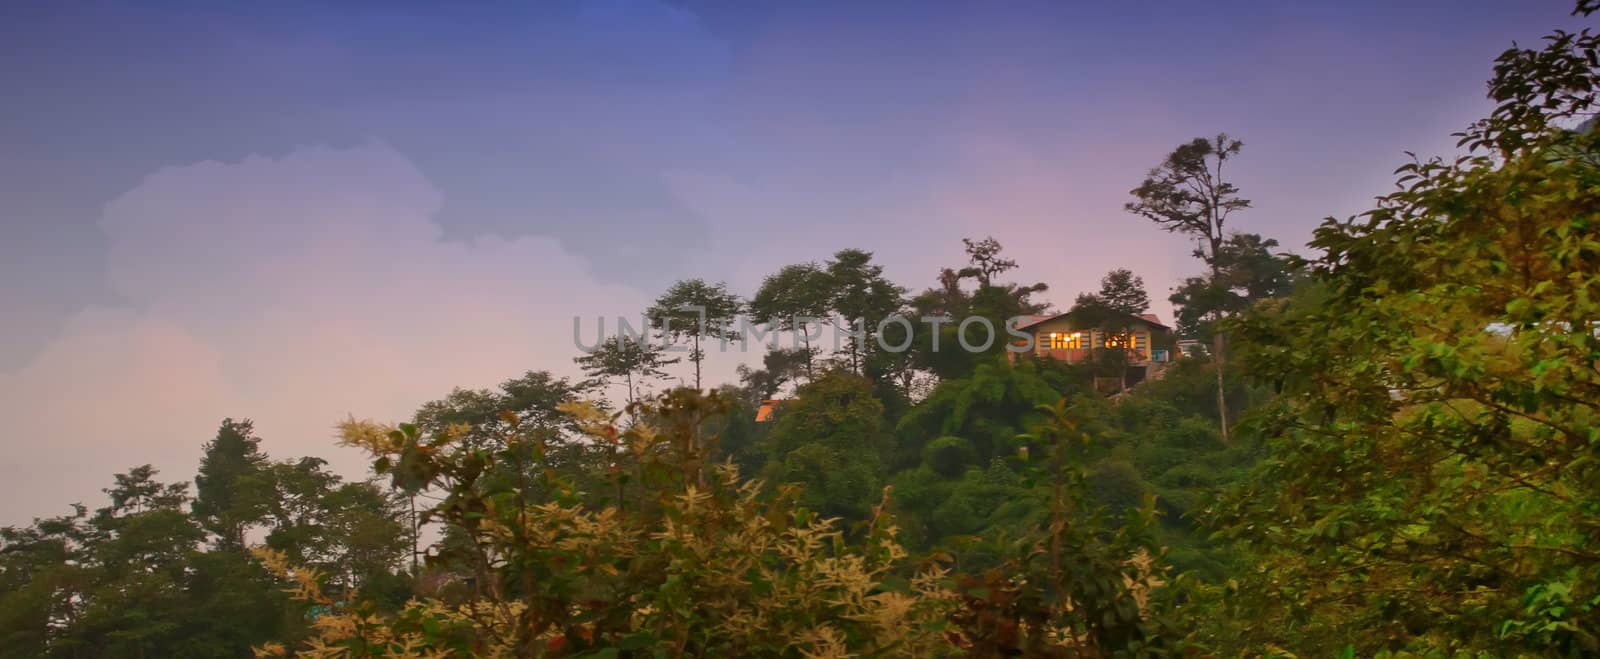 Cottage on a hill, Mountain landscape of Rishop, Darjeeling by srijanroyc